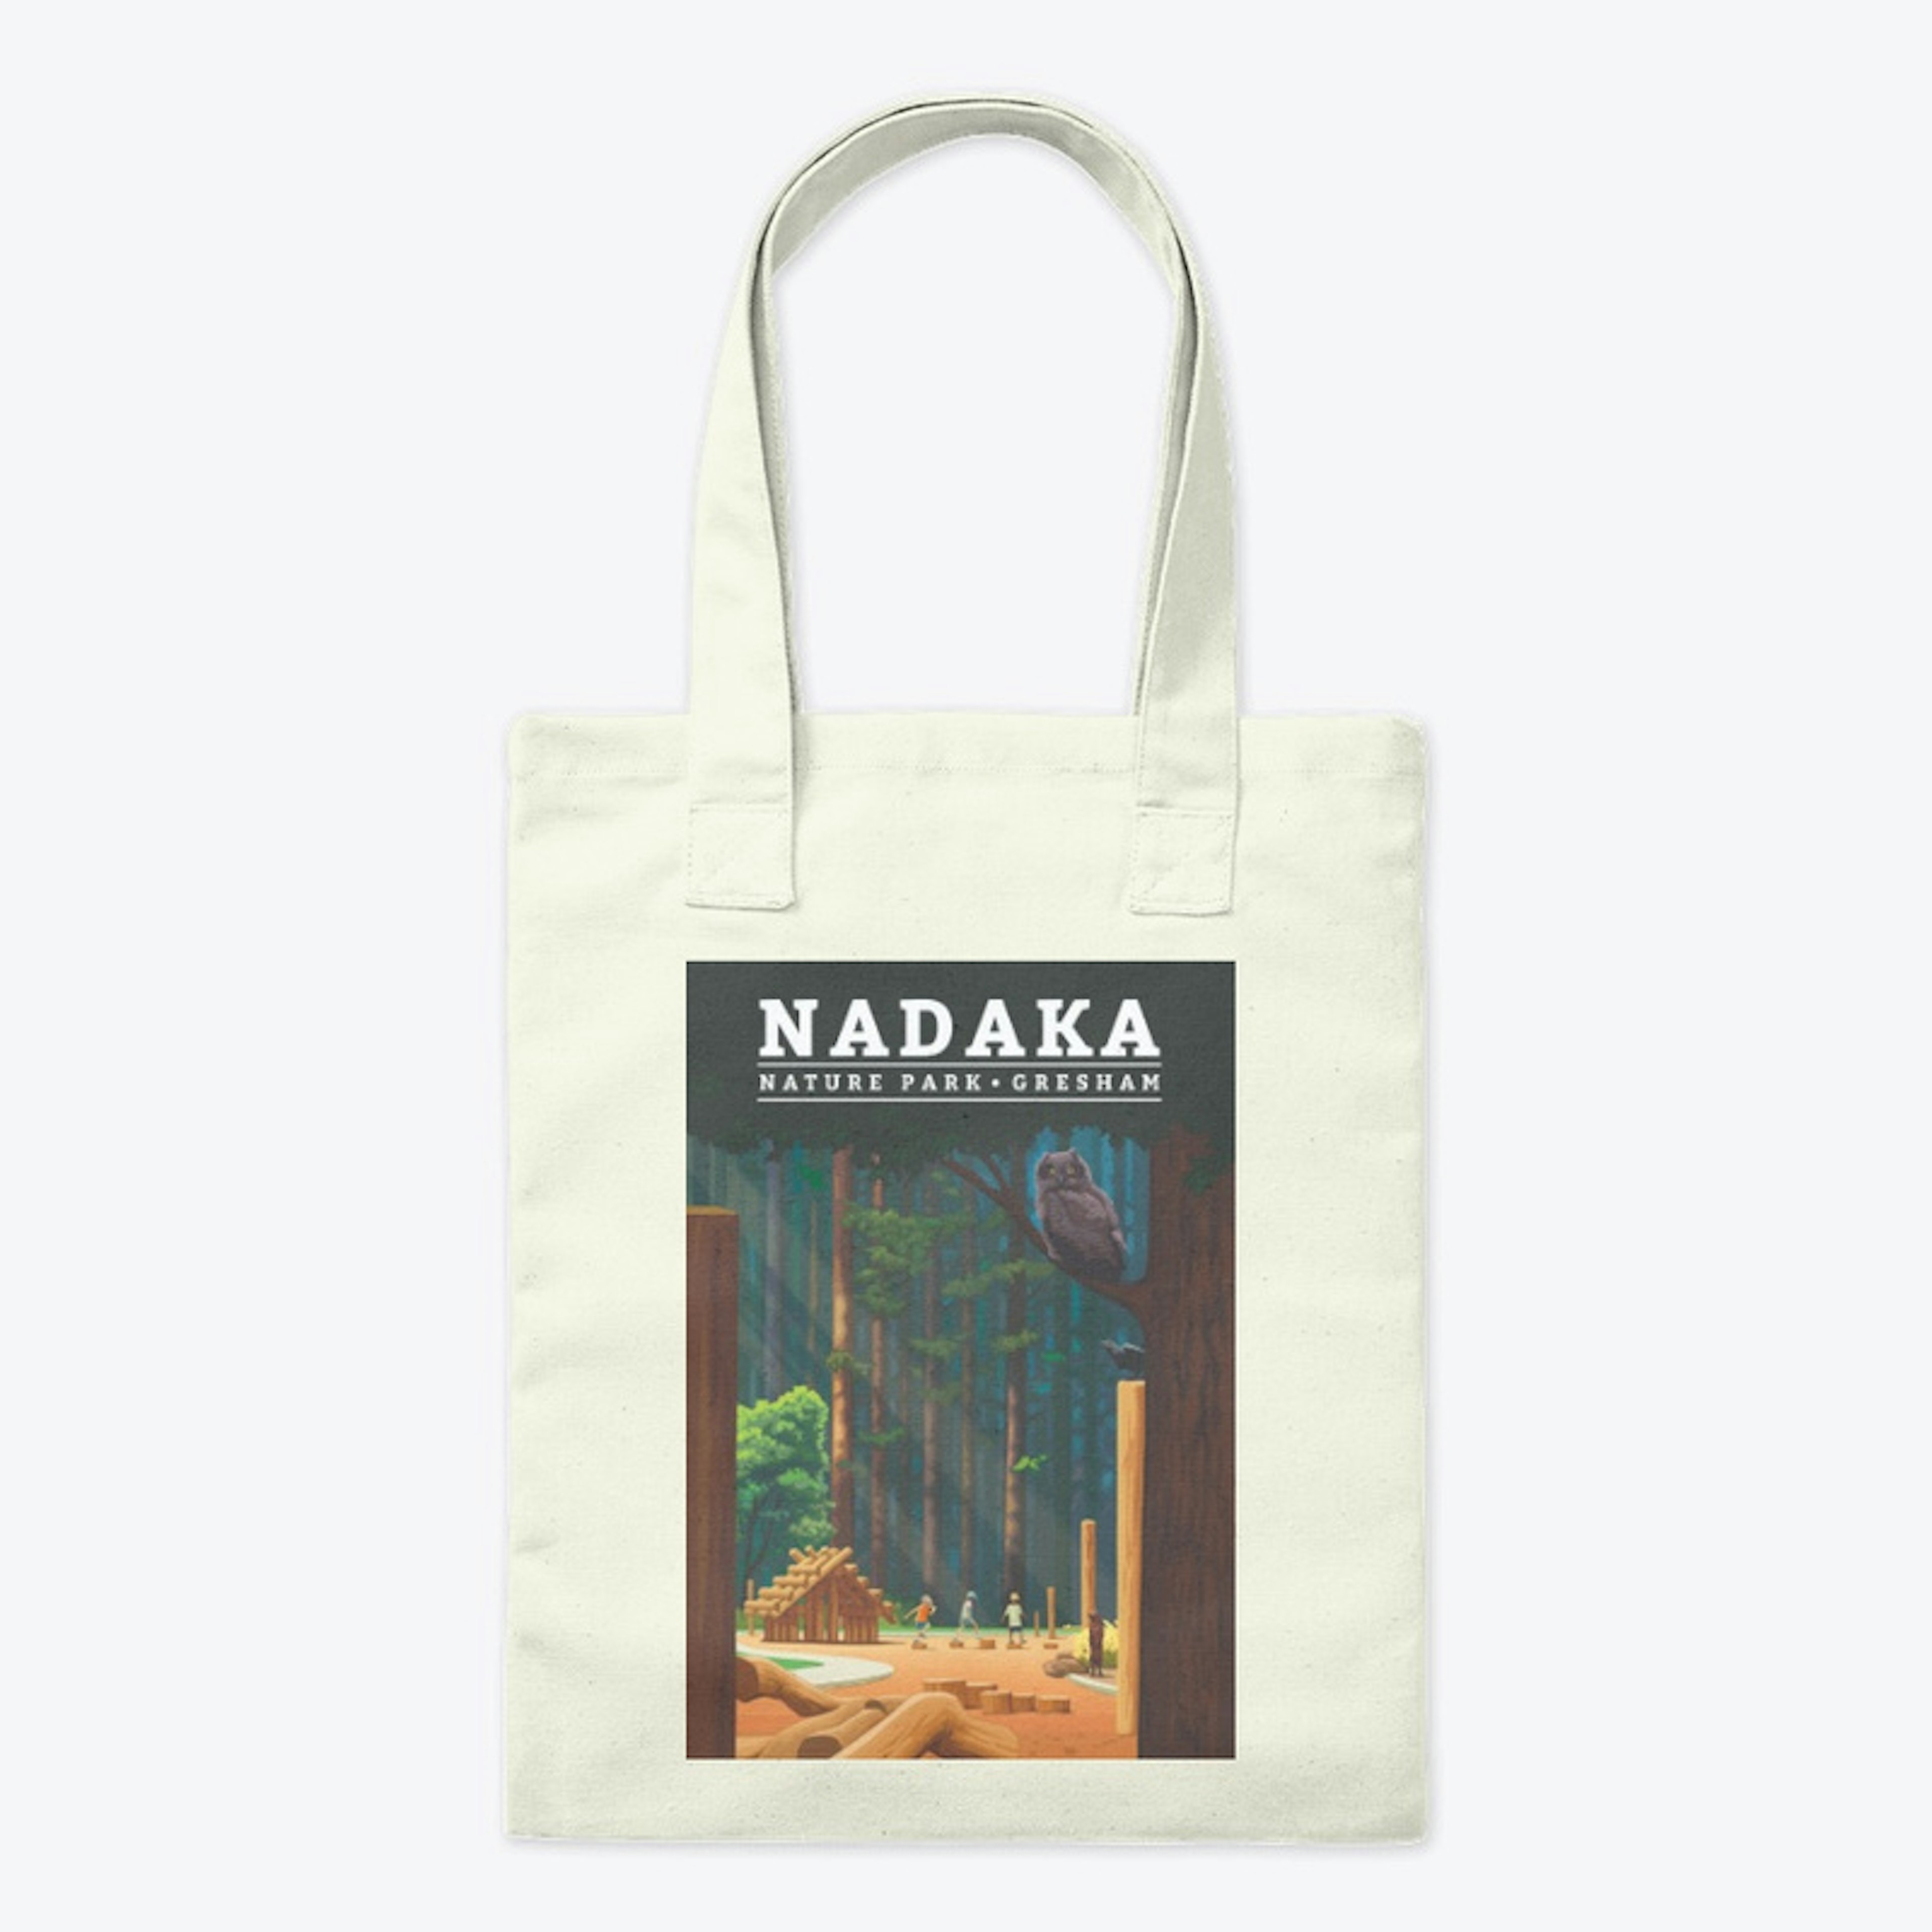 Nadaka Nature Park Tote Bag